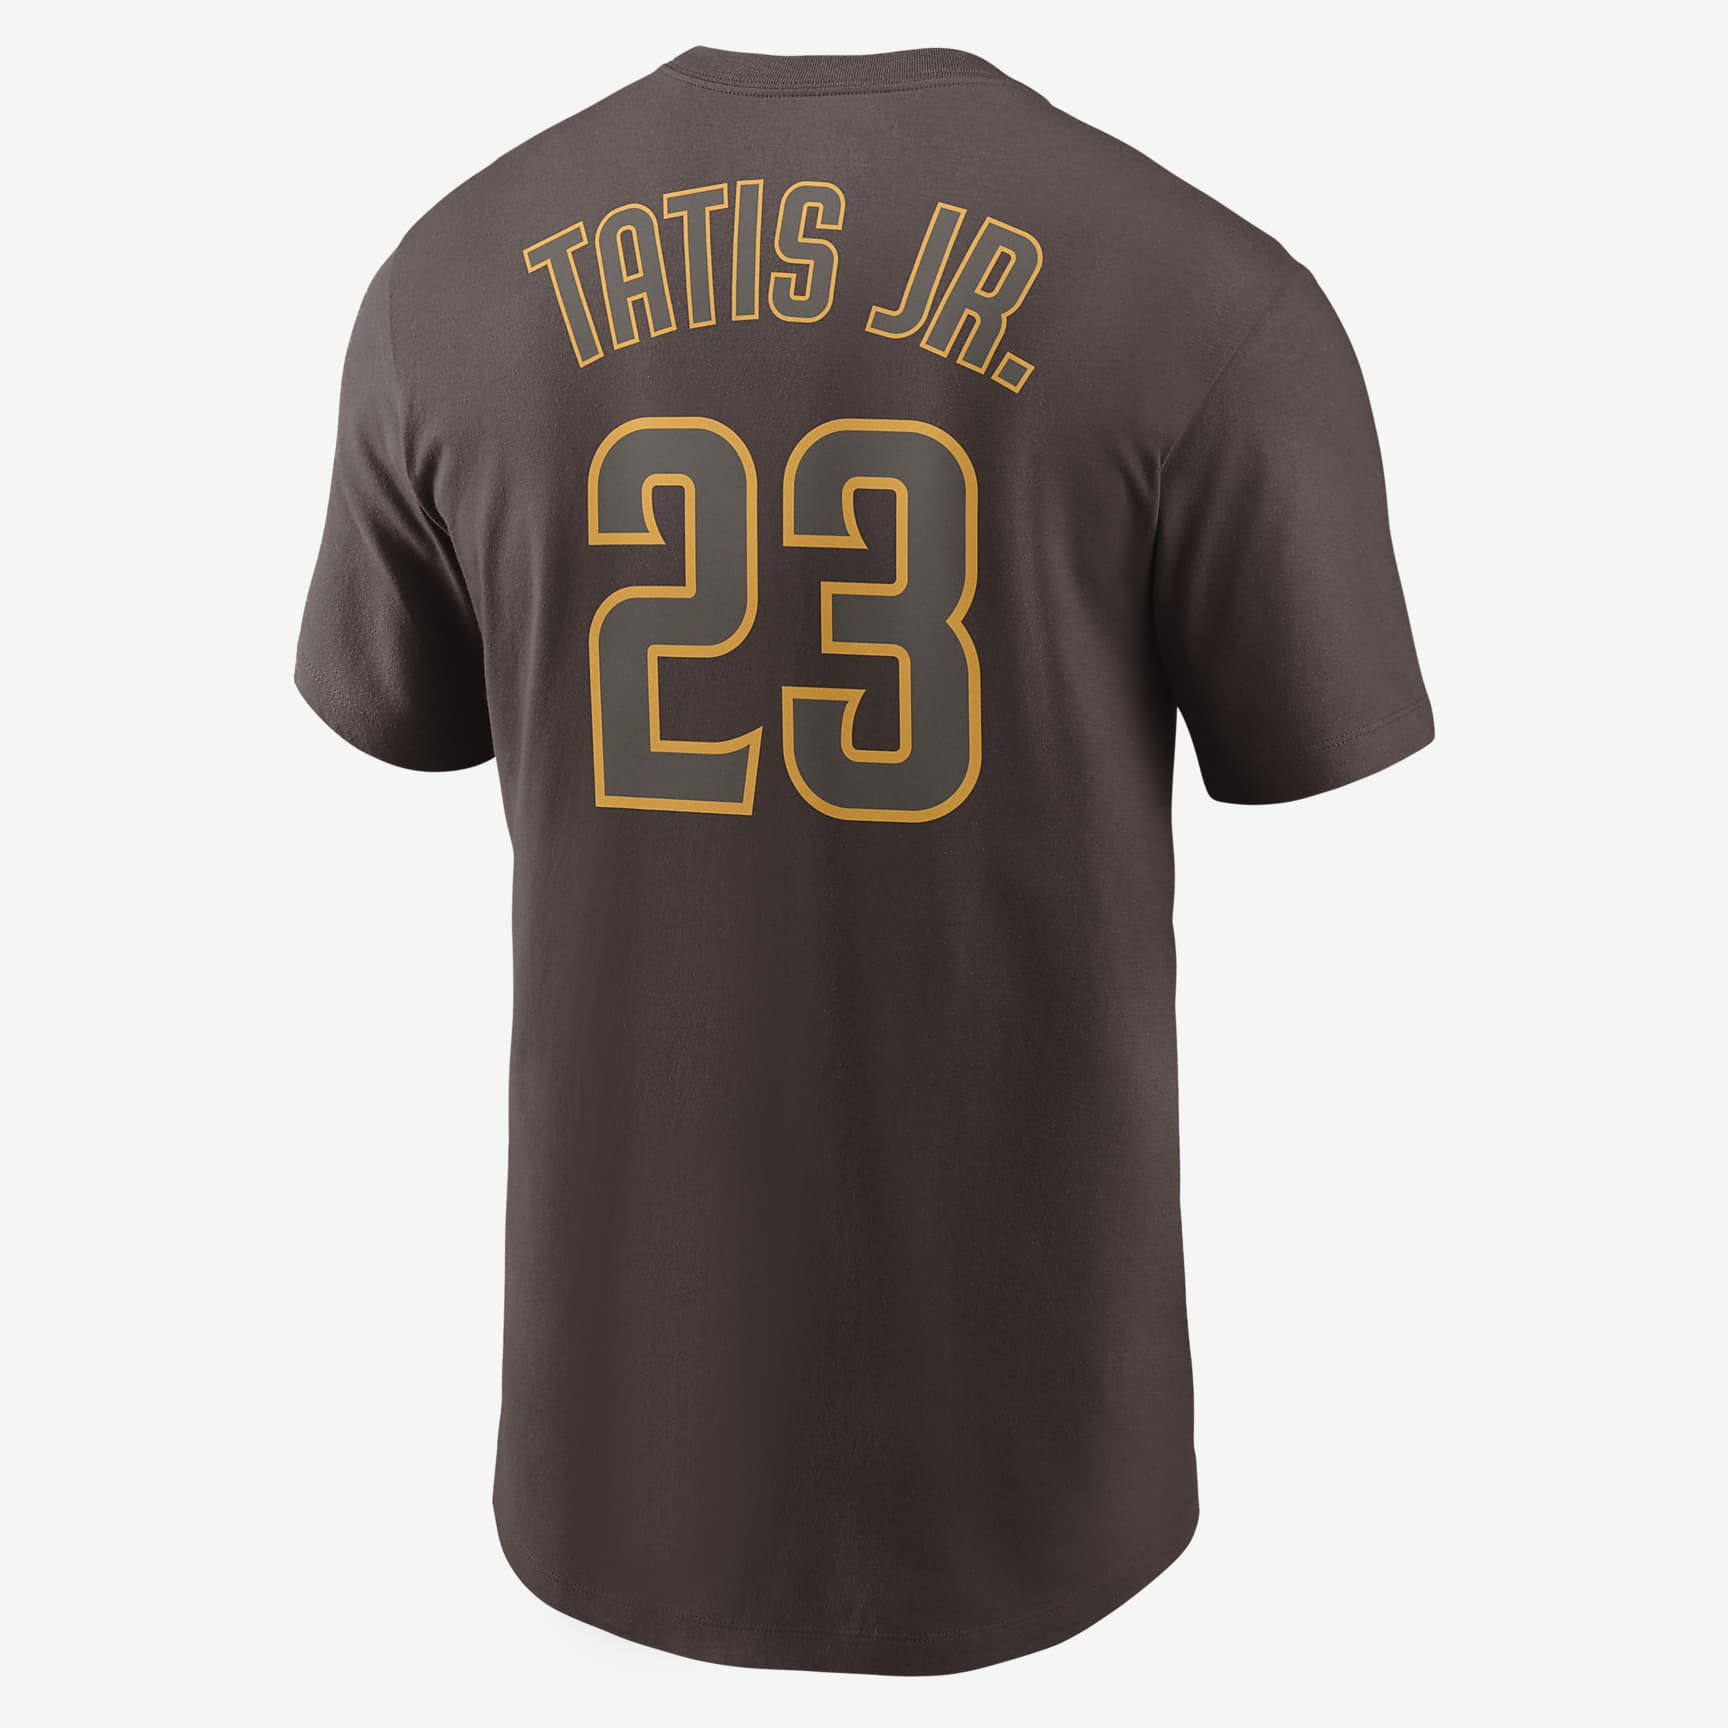 Playera para hombre MLB San Diego Padres (Fernando Tatis). Nike.com